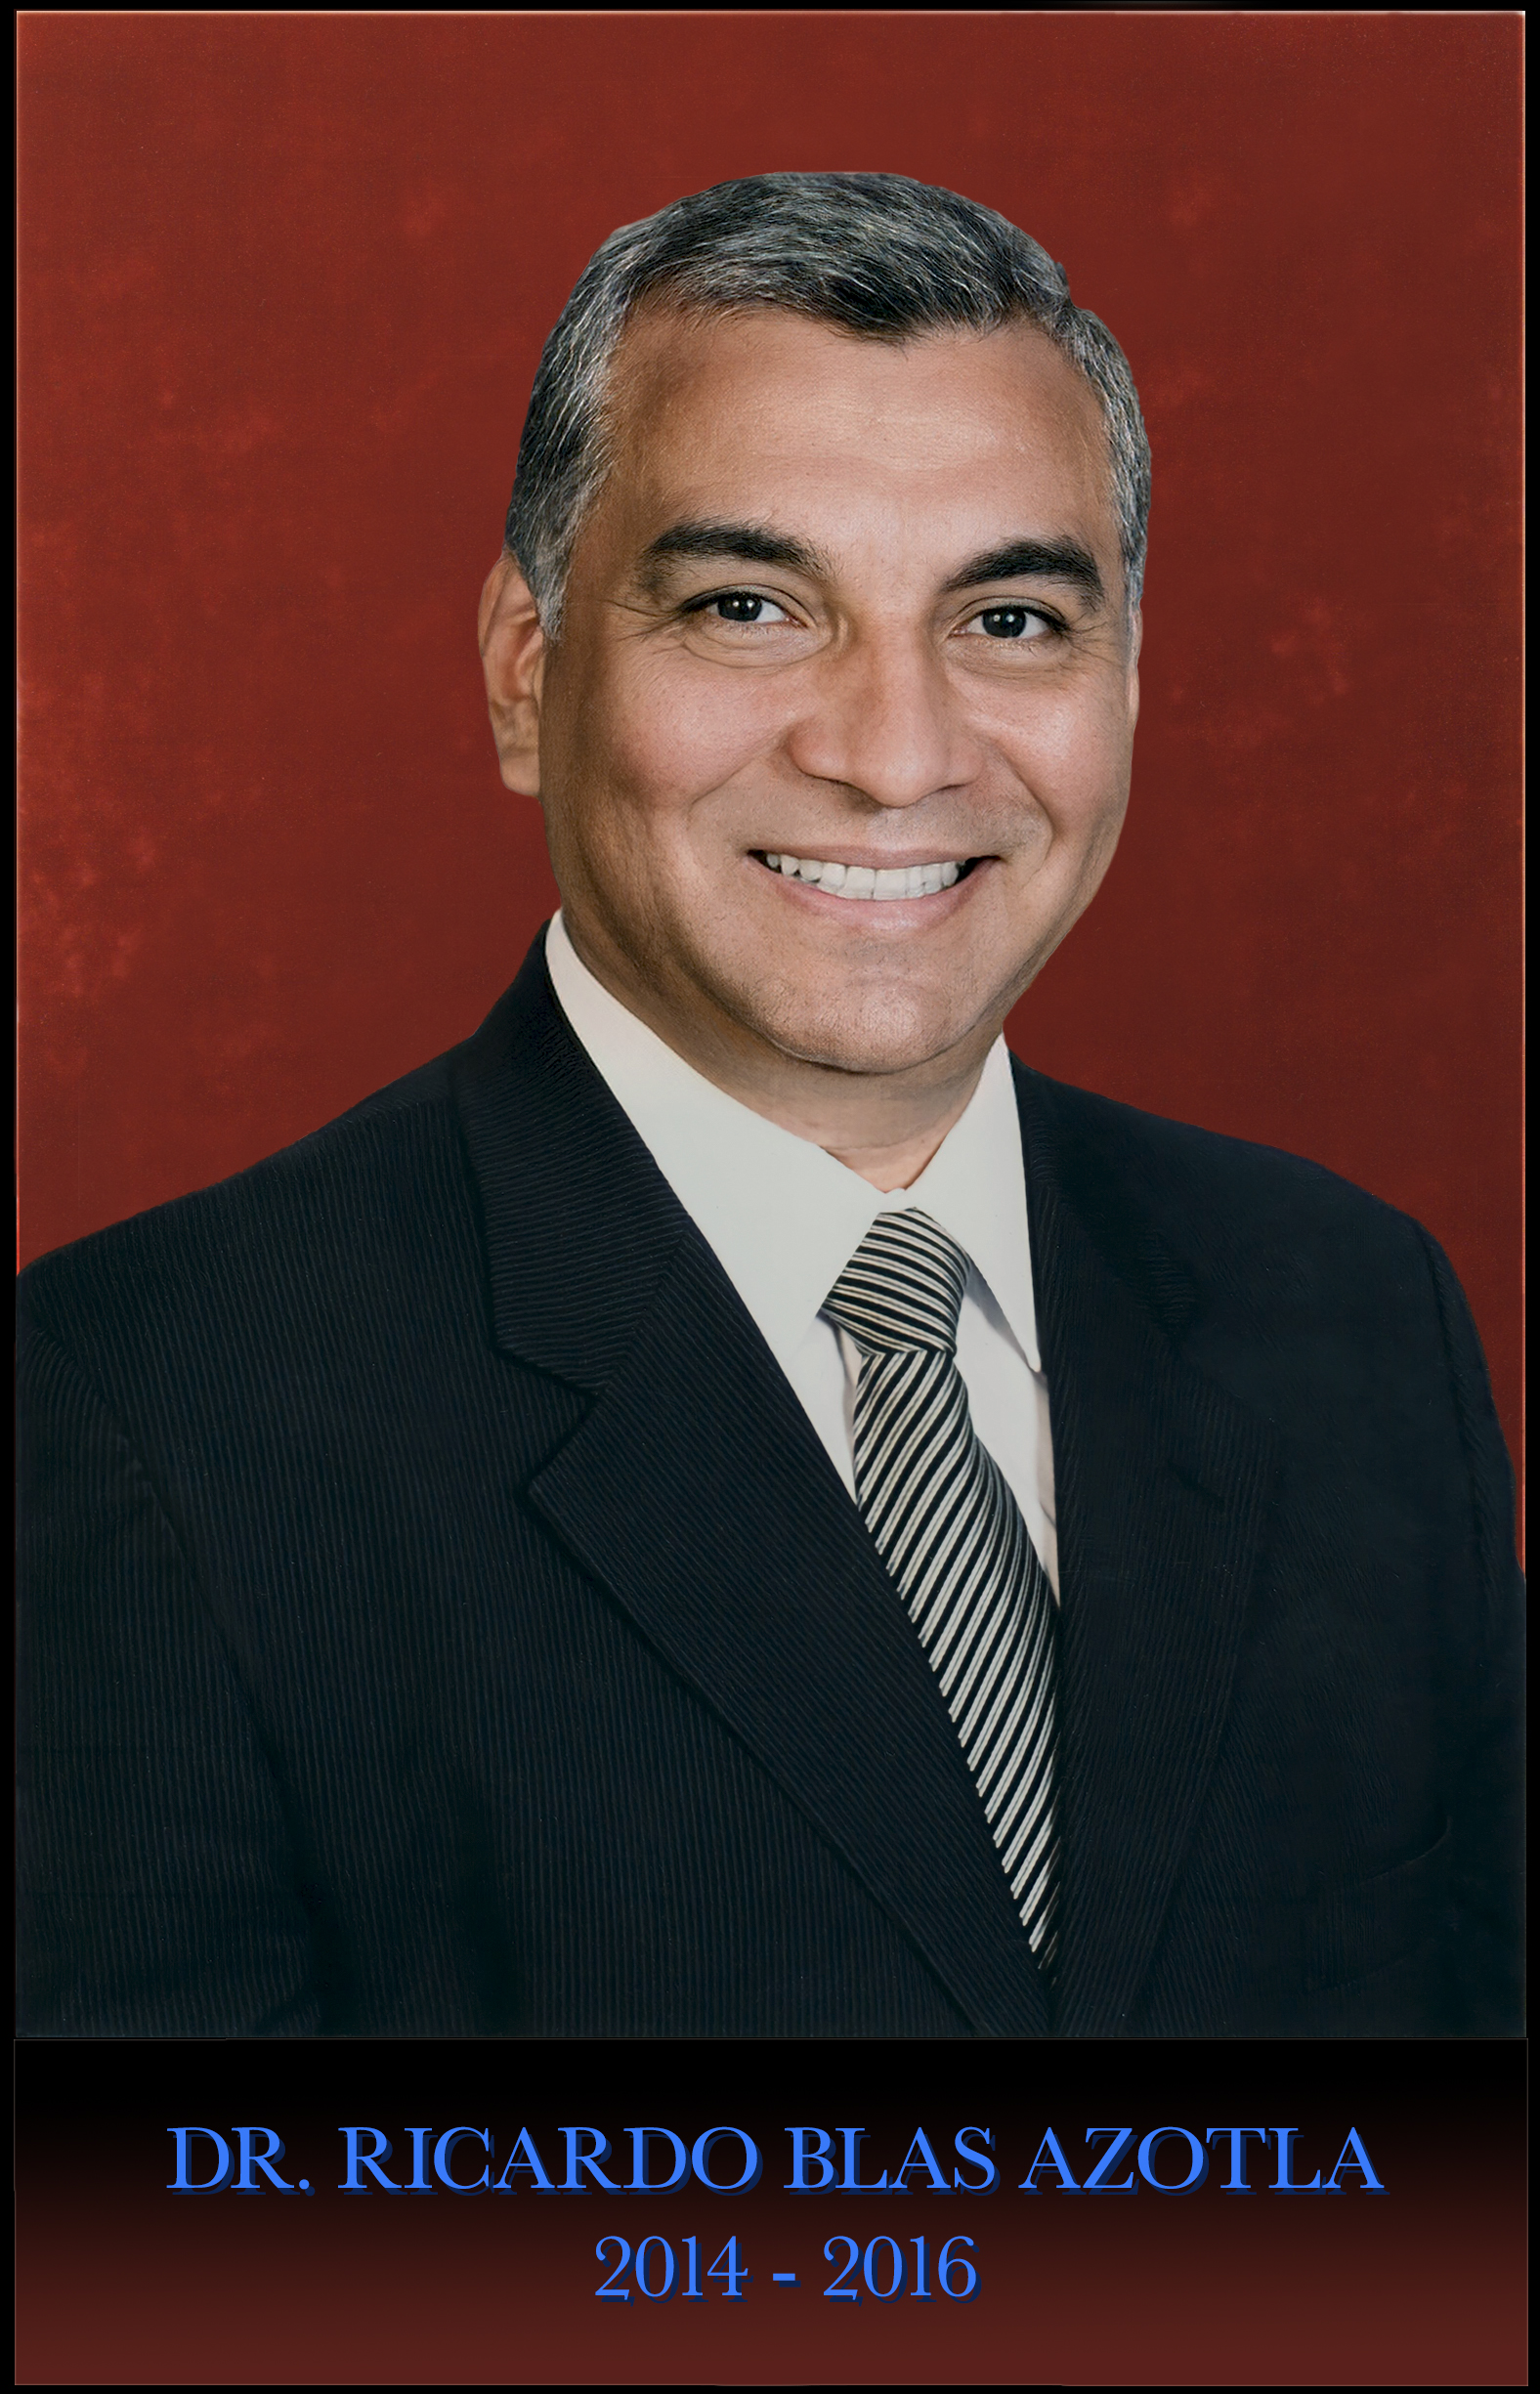 Dr. Ricardo Blas Azotla